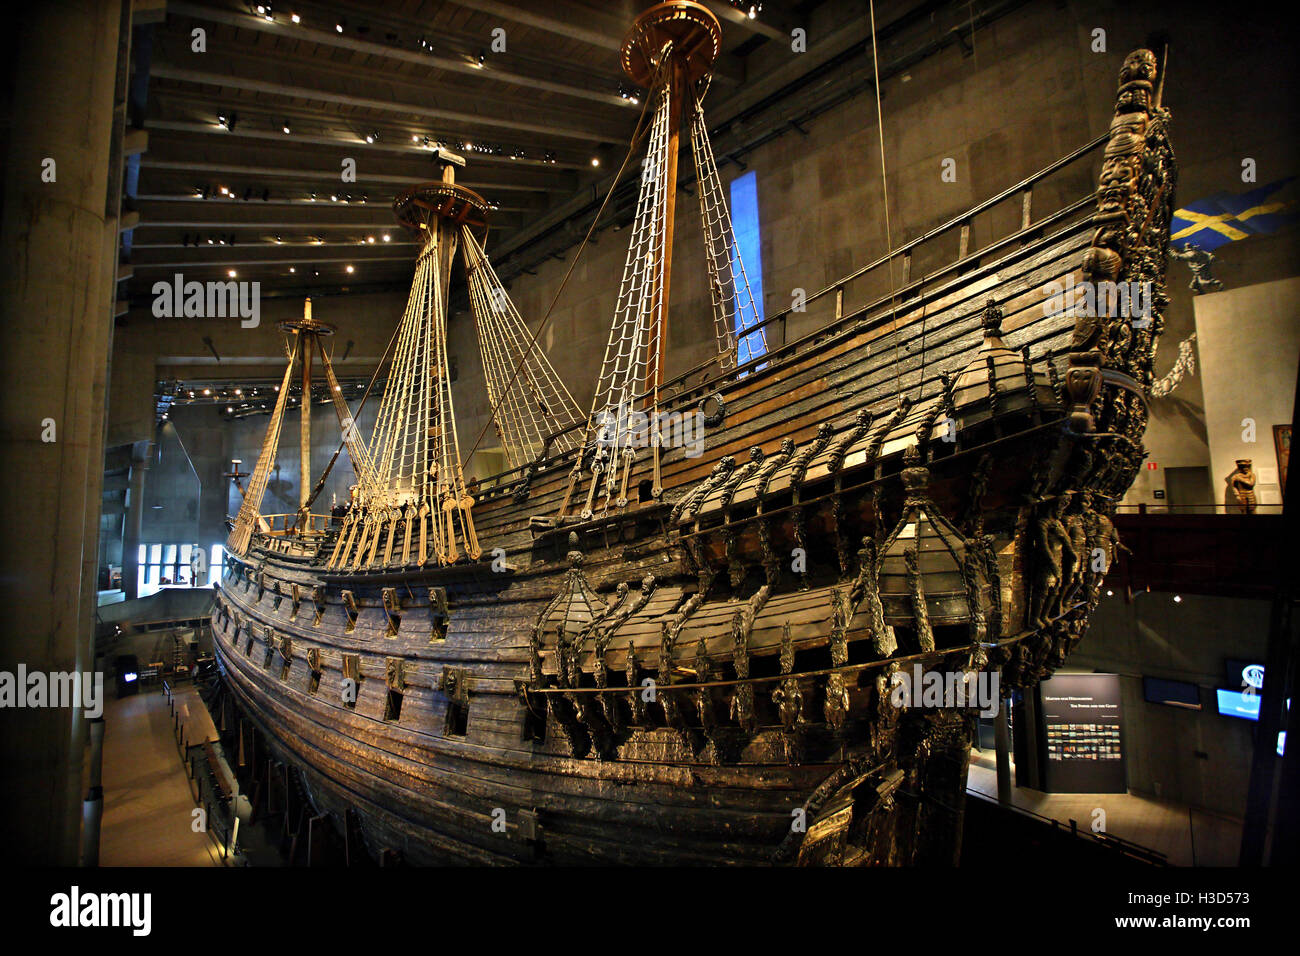 L'intérieur Musée Vasa (Vasamuseet), Djurgarden, Stockholm, Suède. Banque D'Images